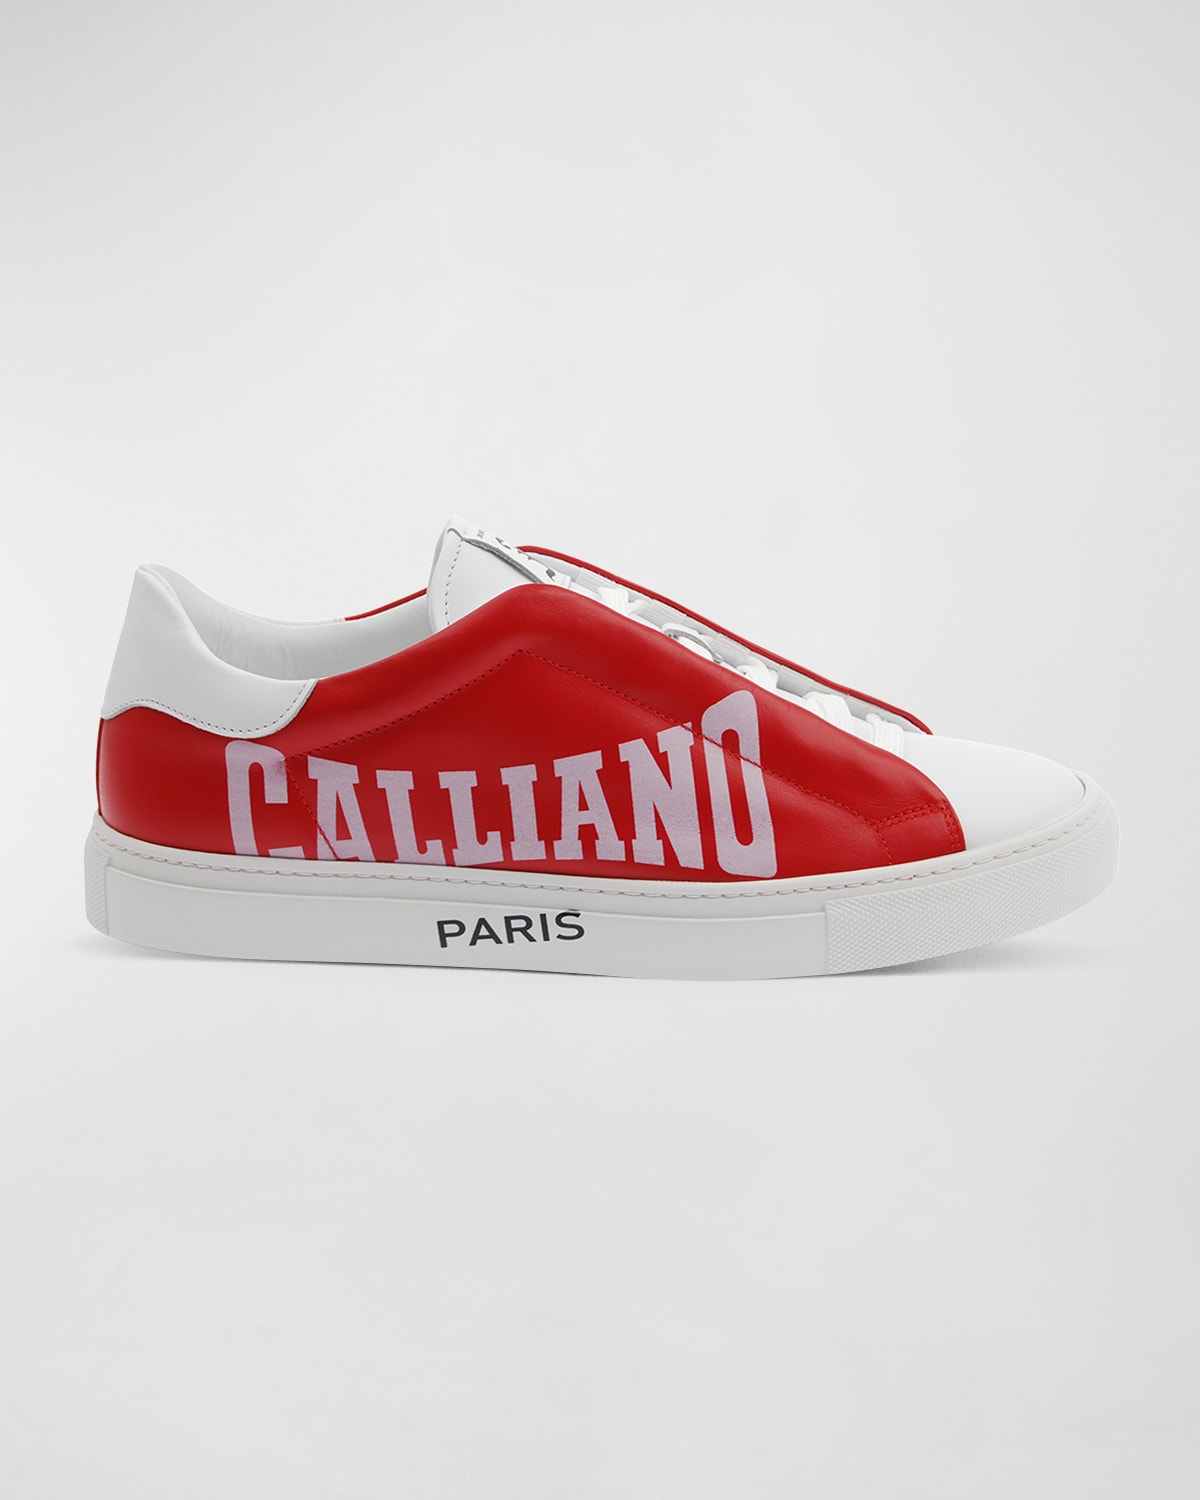 John Galliano Paris Men's Typographic Logo Hidden-Lace Low-Top Sneakers